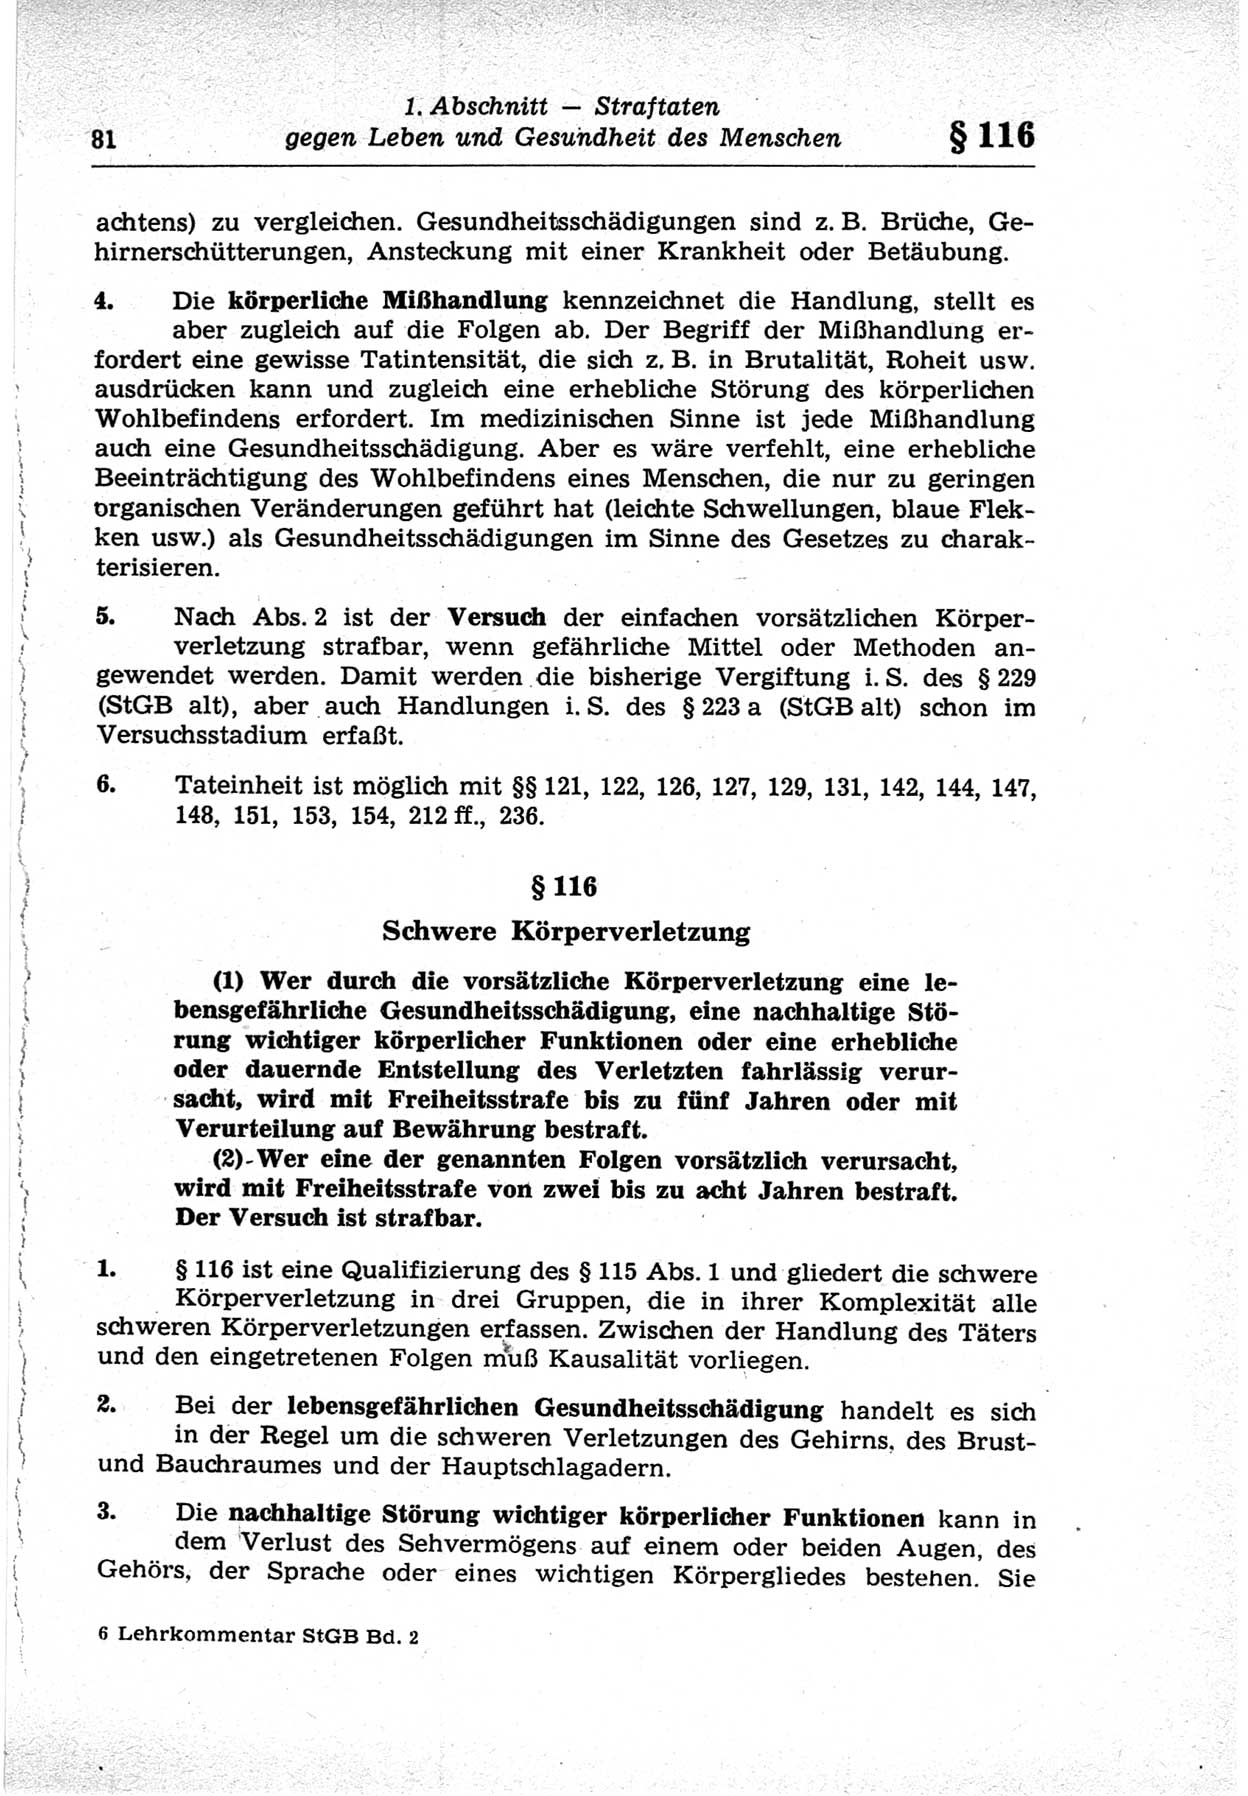 Strafrecht der Deutschen Demokratischen Republik (DDR), Lehrkommentar zum Strafgesetzbuch (StGB), Besonderer Teil 1969, Seite 81 (Strafr. DDR Lehrkomm. StGB BT 1969, S. 81)